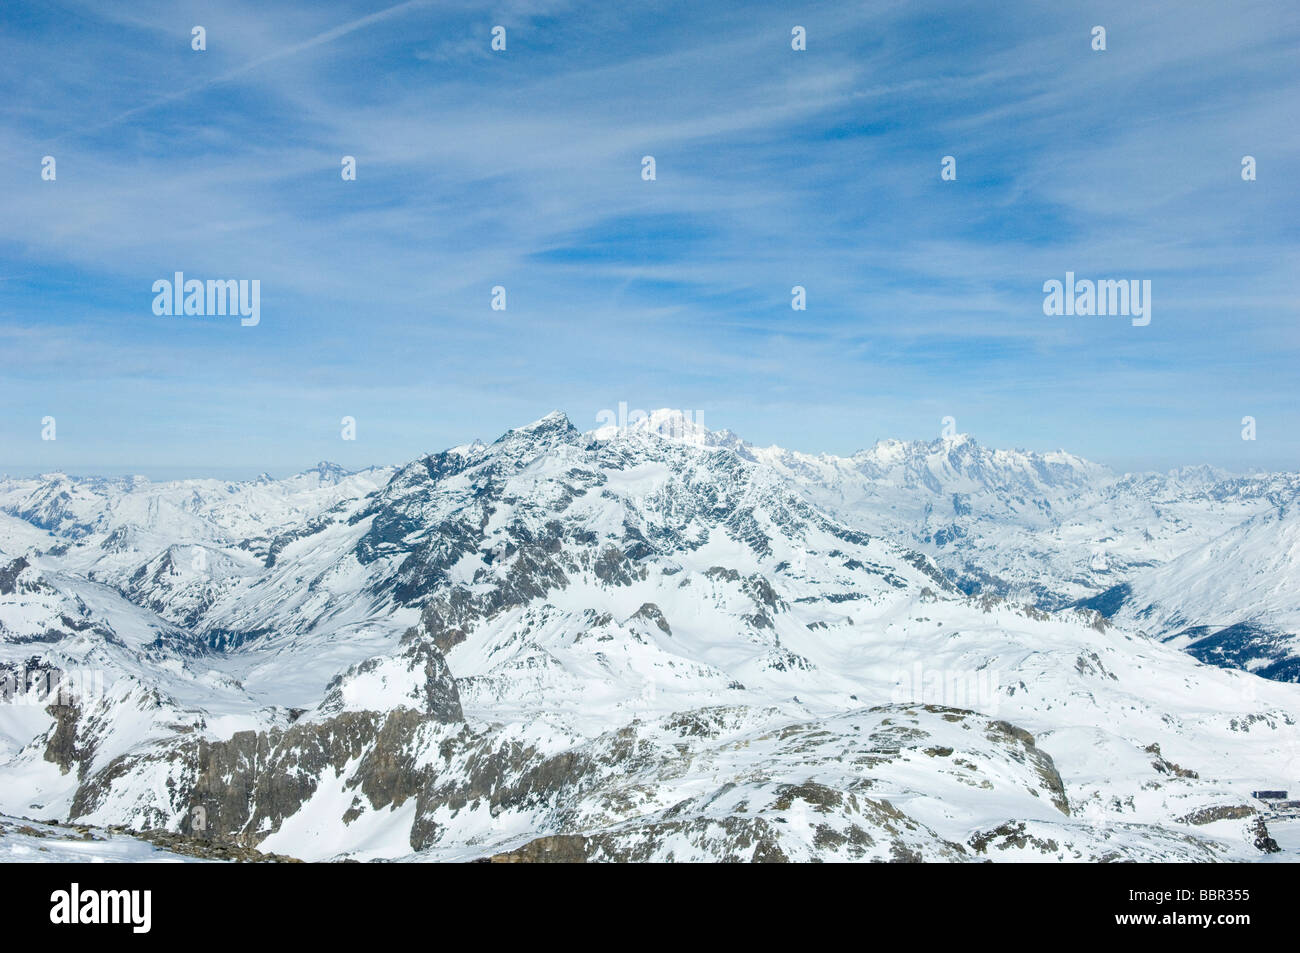 Französische Alpen Winter Ski Resort Stockfoto